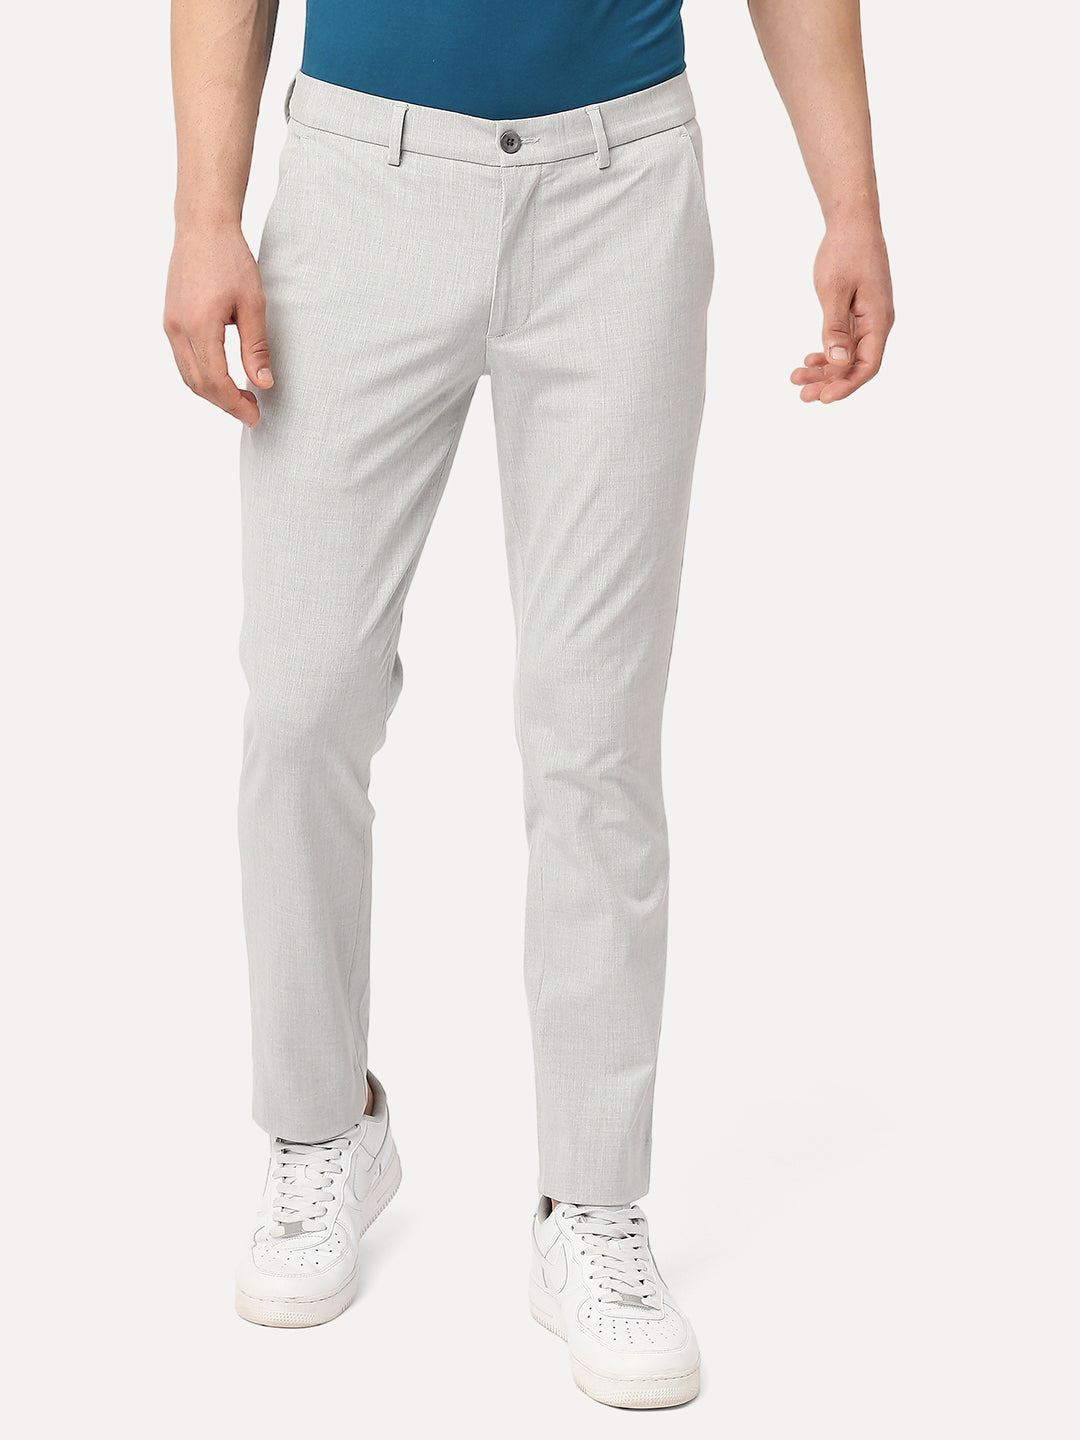 grey trouser for men